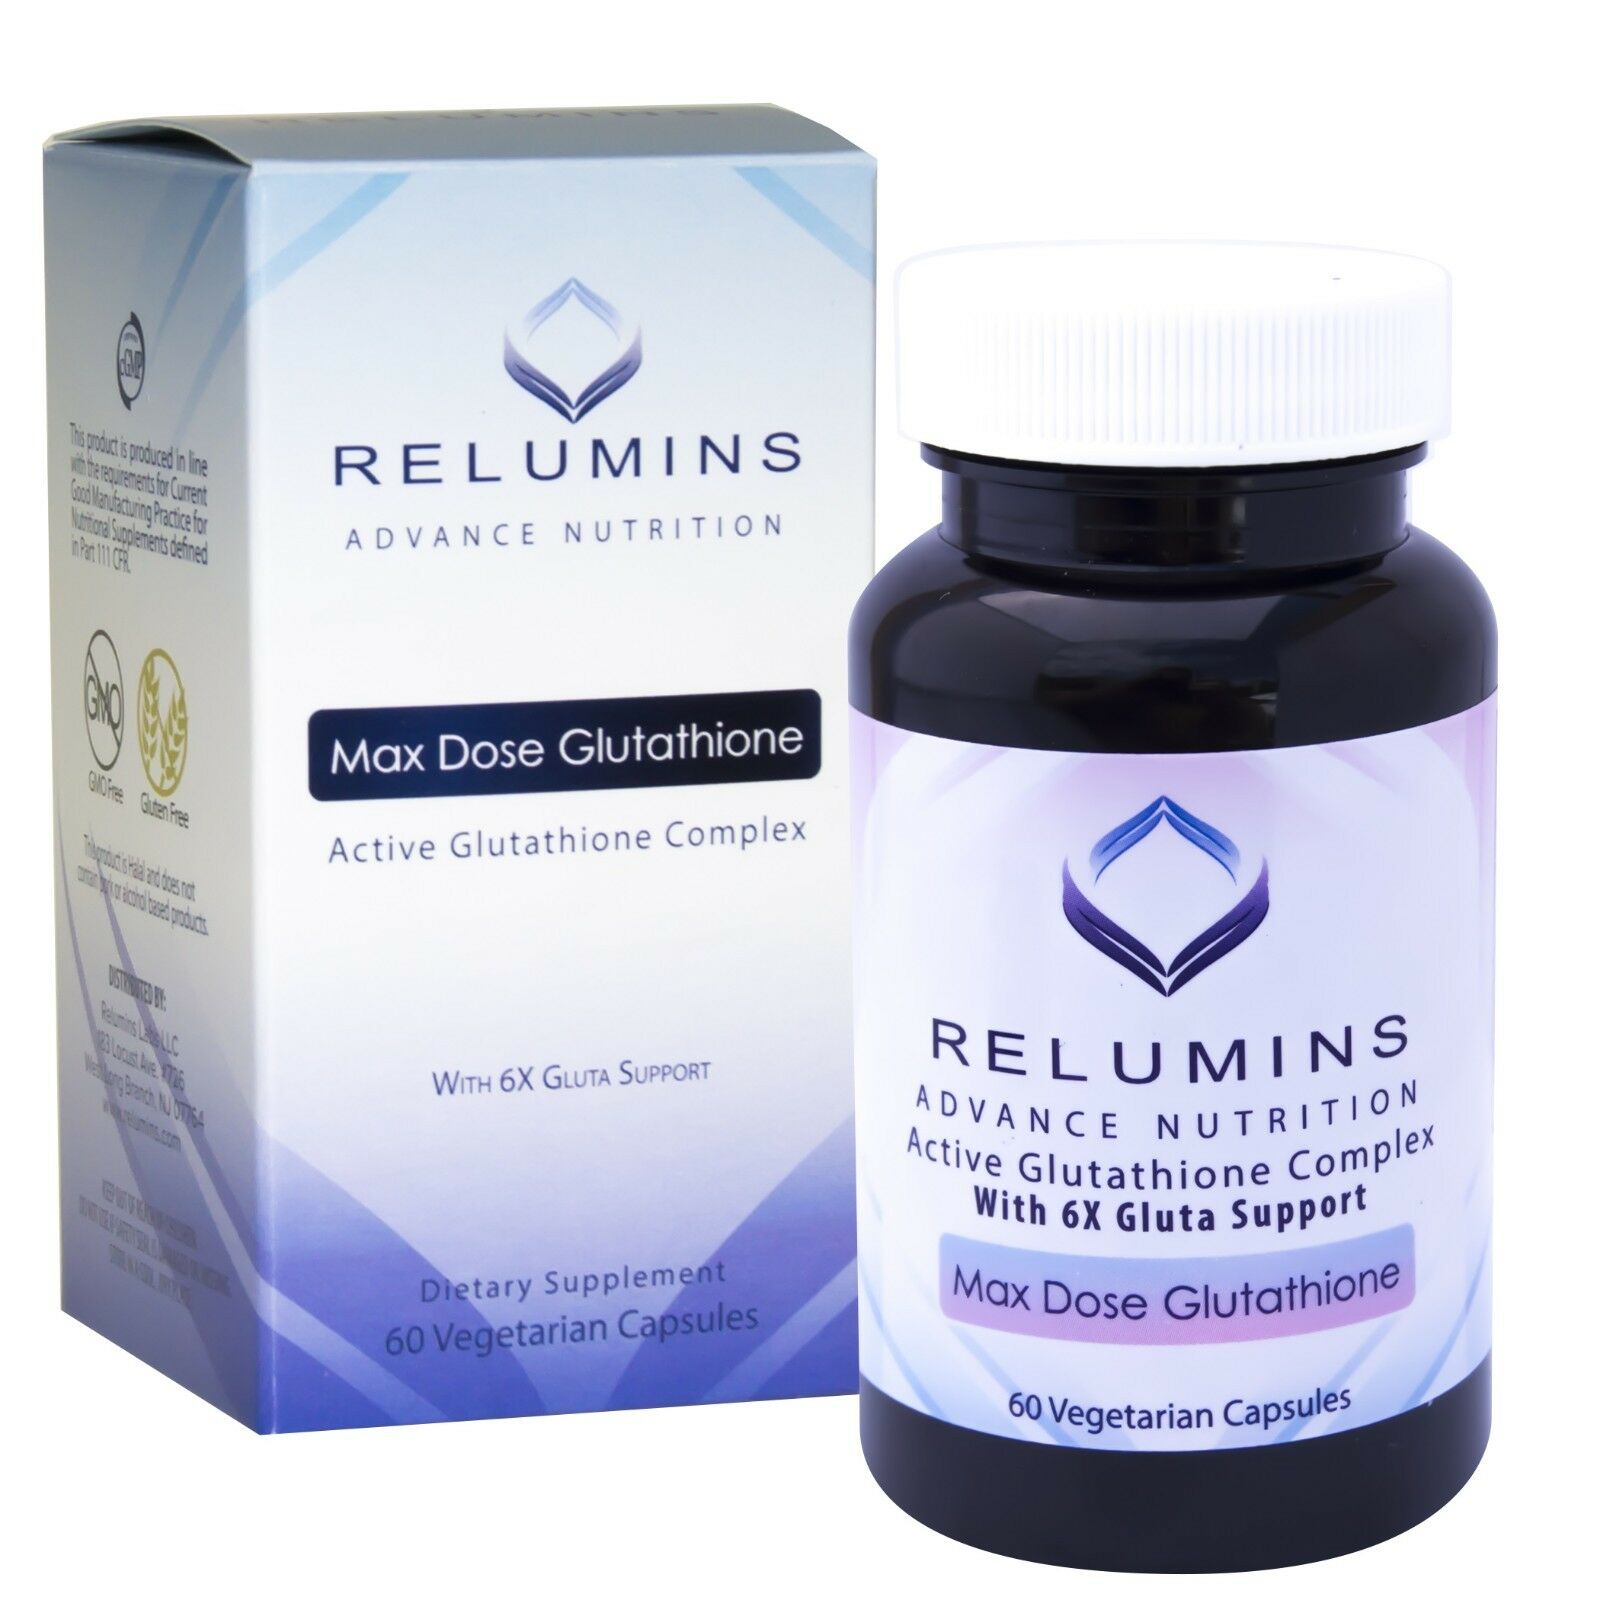 [アメリカ無料直送]レルミンアドバンスホワイト1650mgグルタチオンコンプレックス-皮膚栄養素15